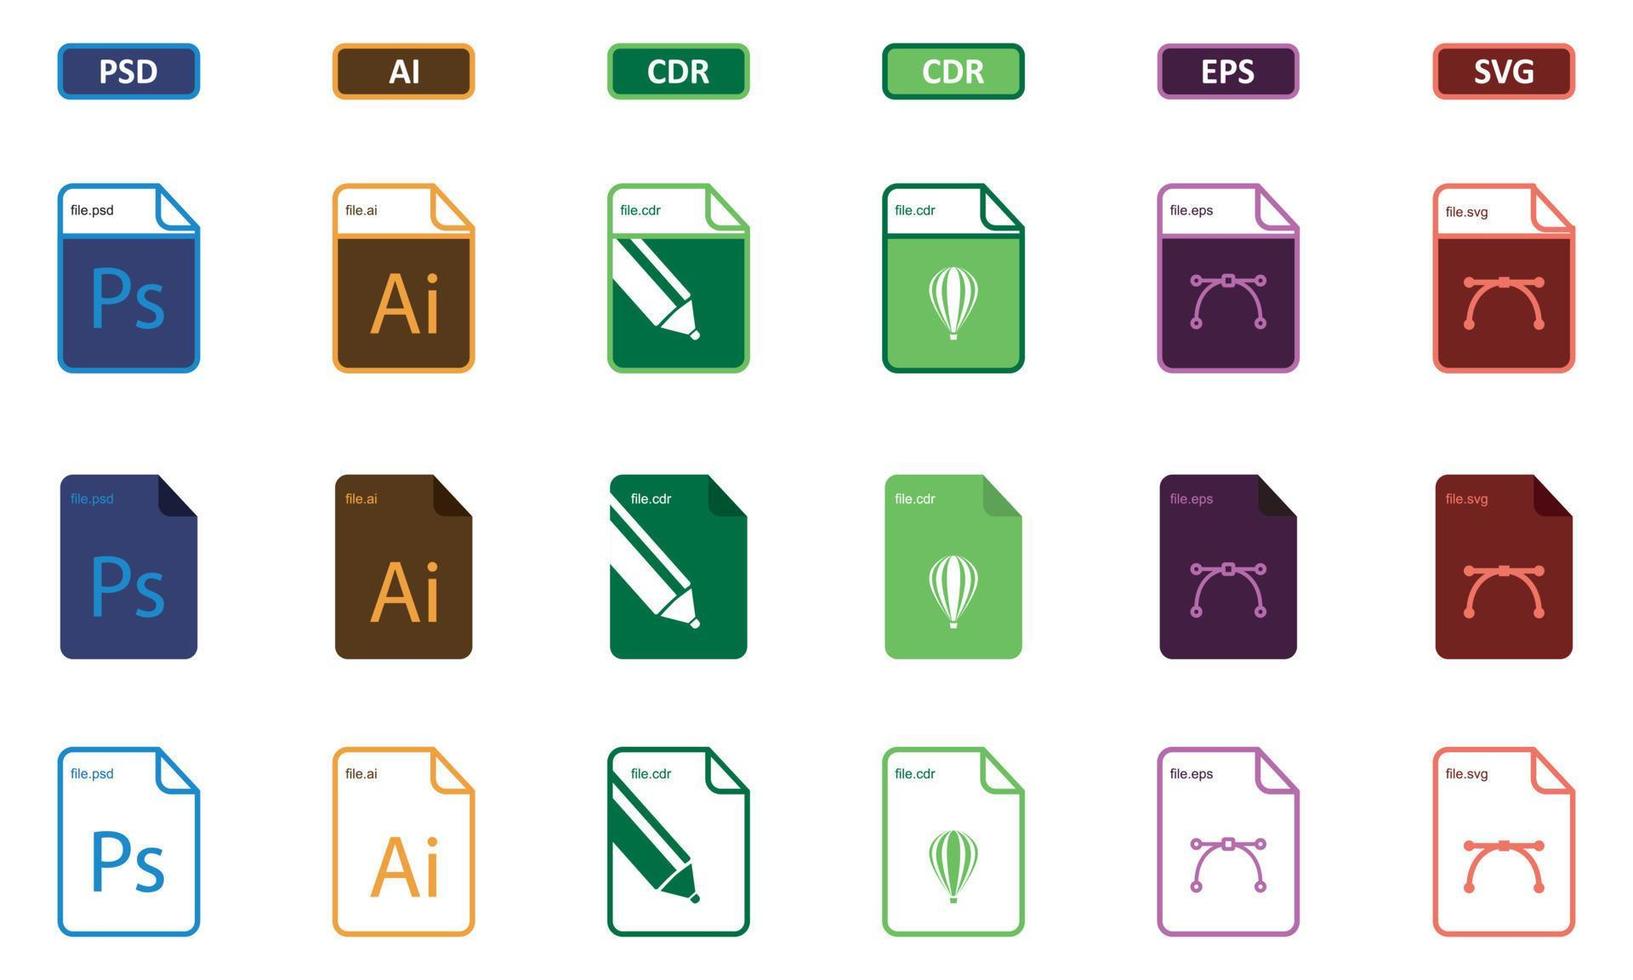 Coreldraw logo Icons, Logos, Symbols – Free Download PNG, SVG